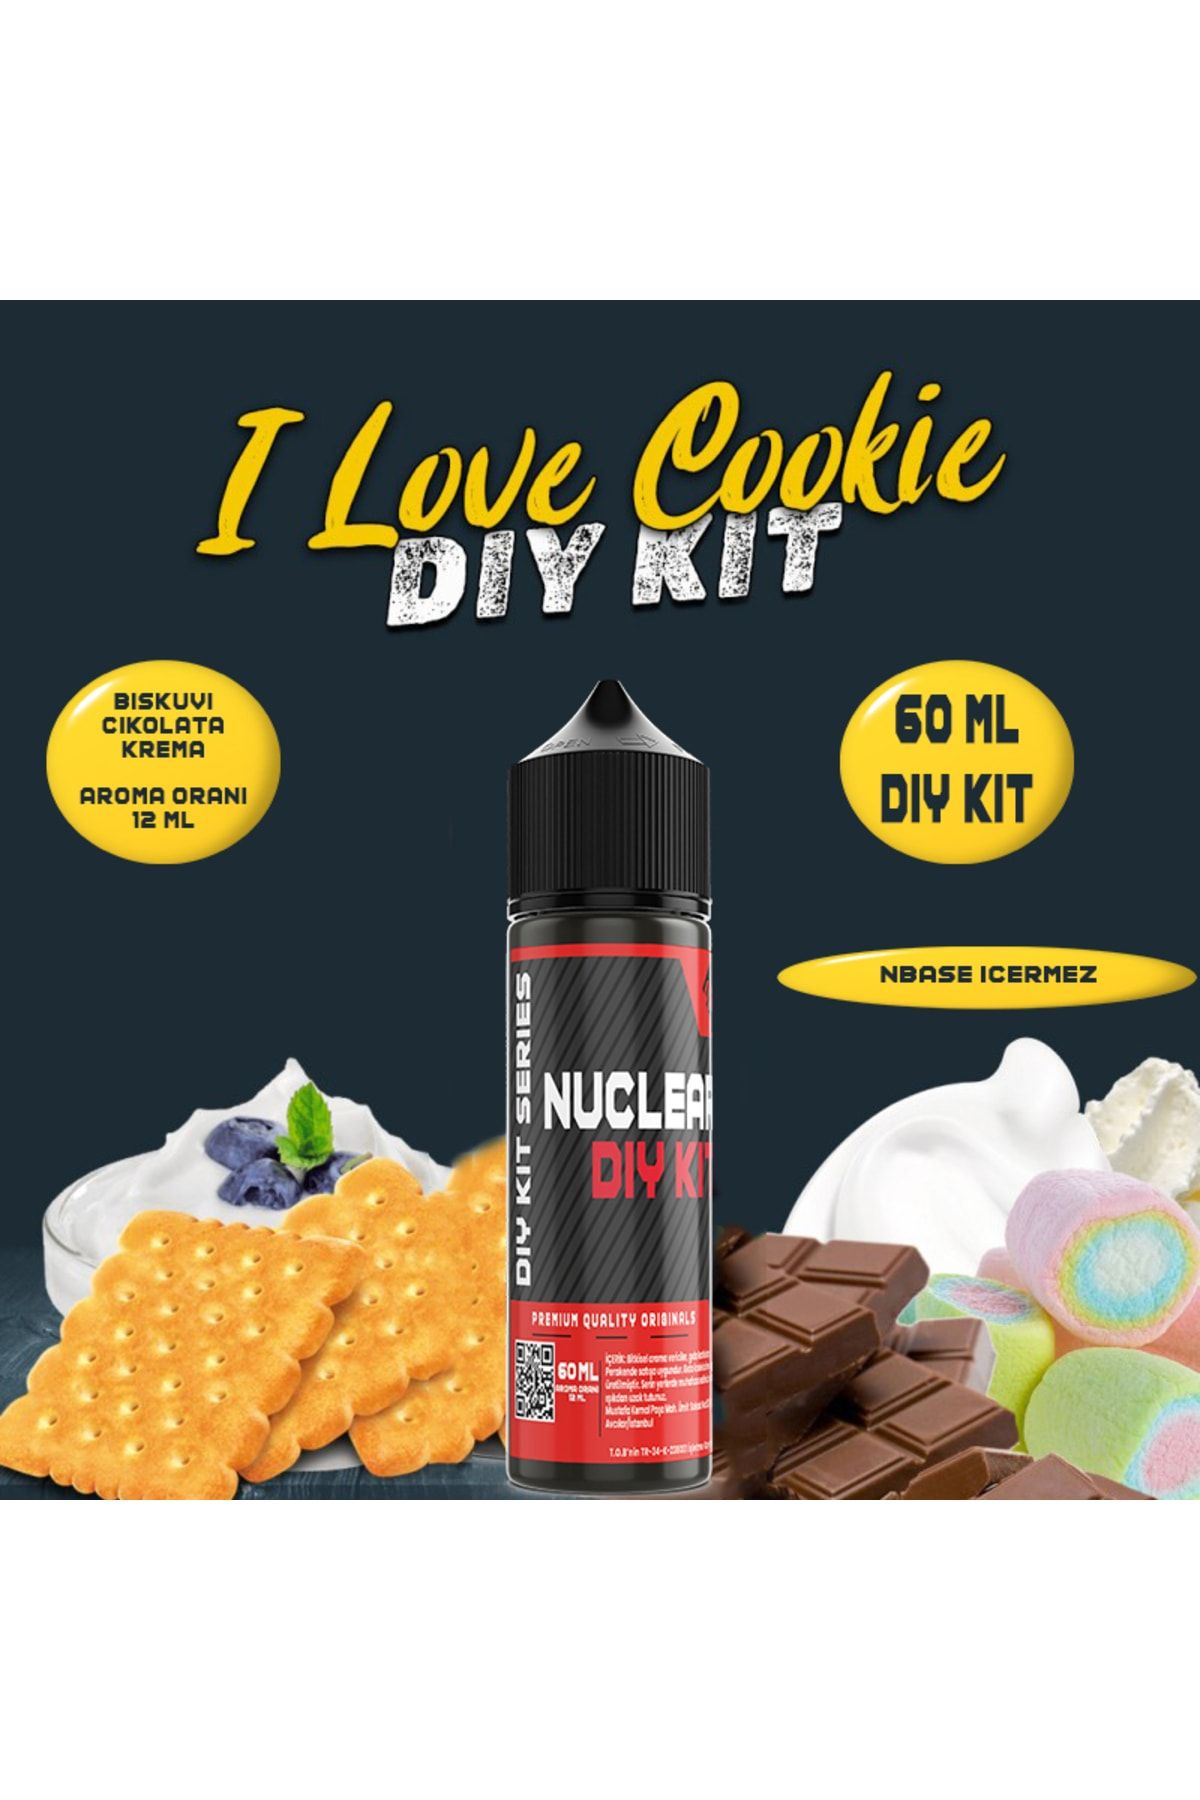 Nuclear Kimya İ Love Cookie - 60 ml Dıy Kit (ŞİŞEDE SADECE 12 ML AROMA VARDIR HAZIR DEĞİLDİR